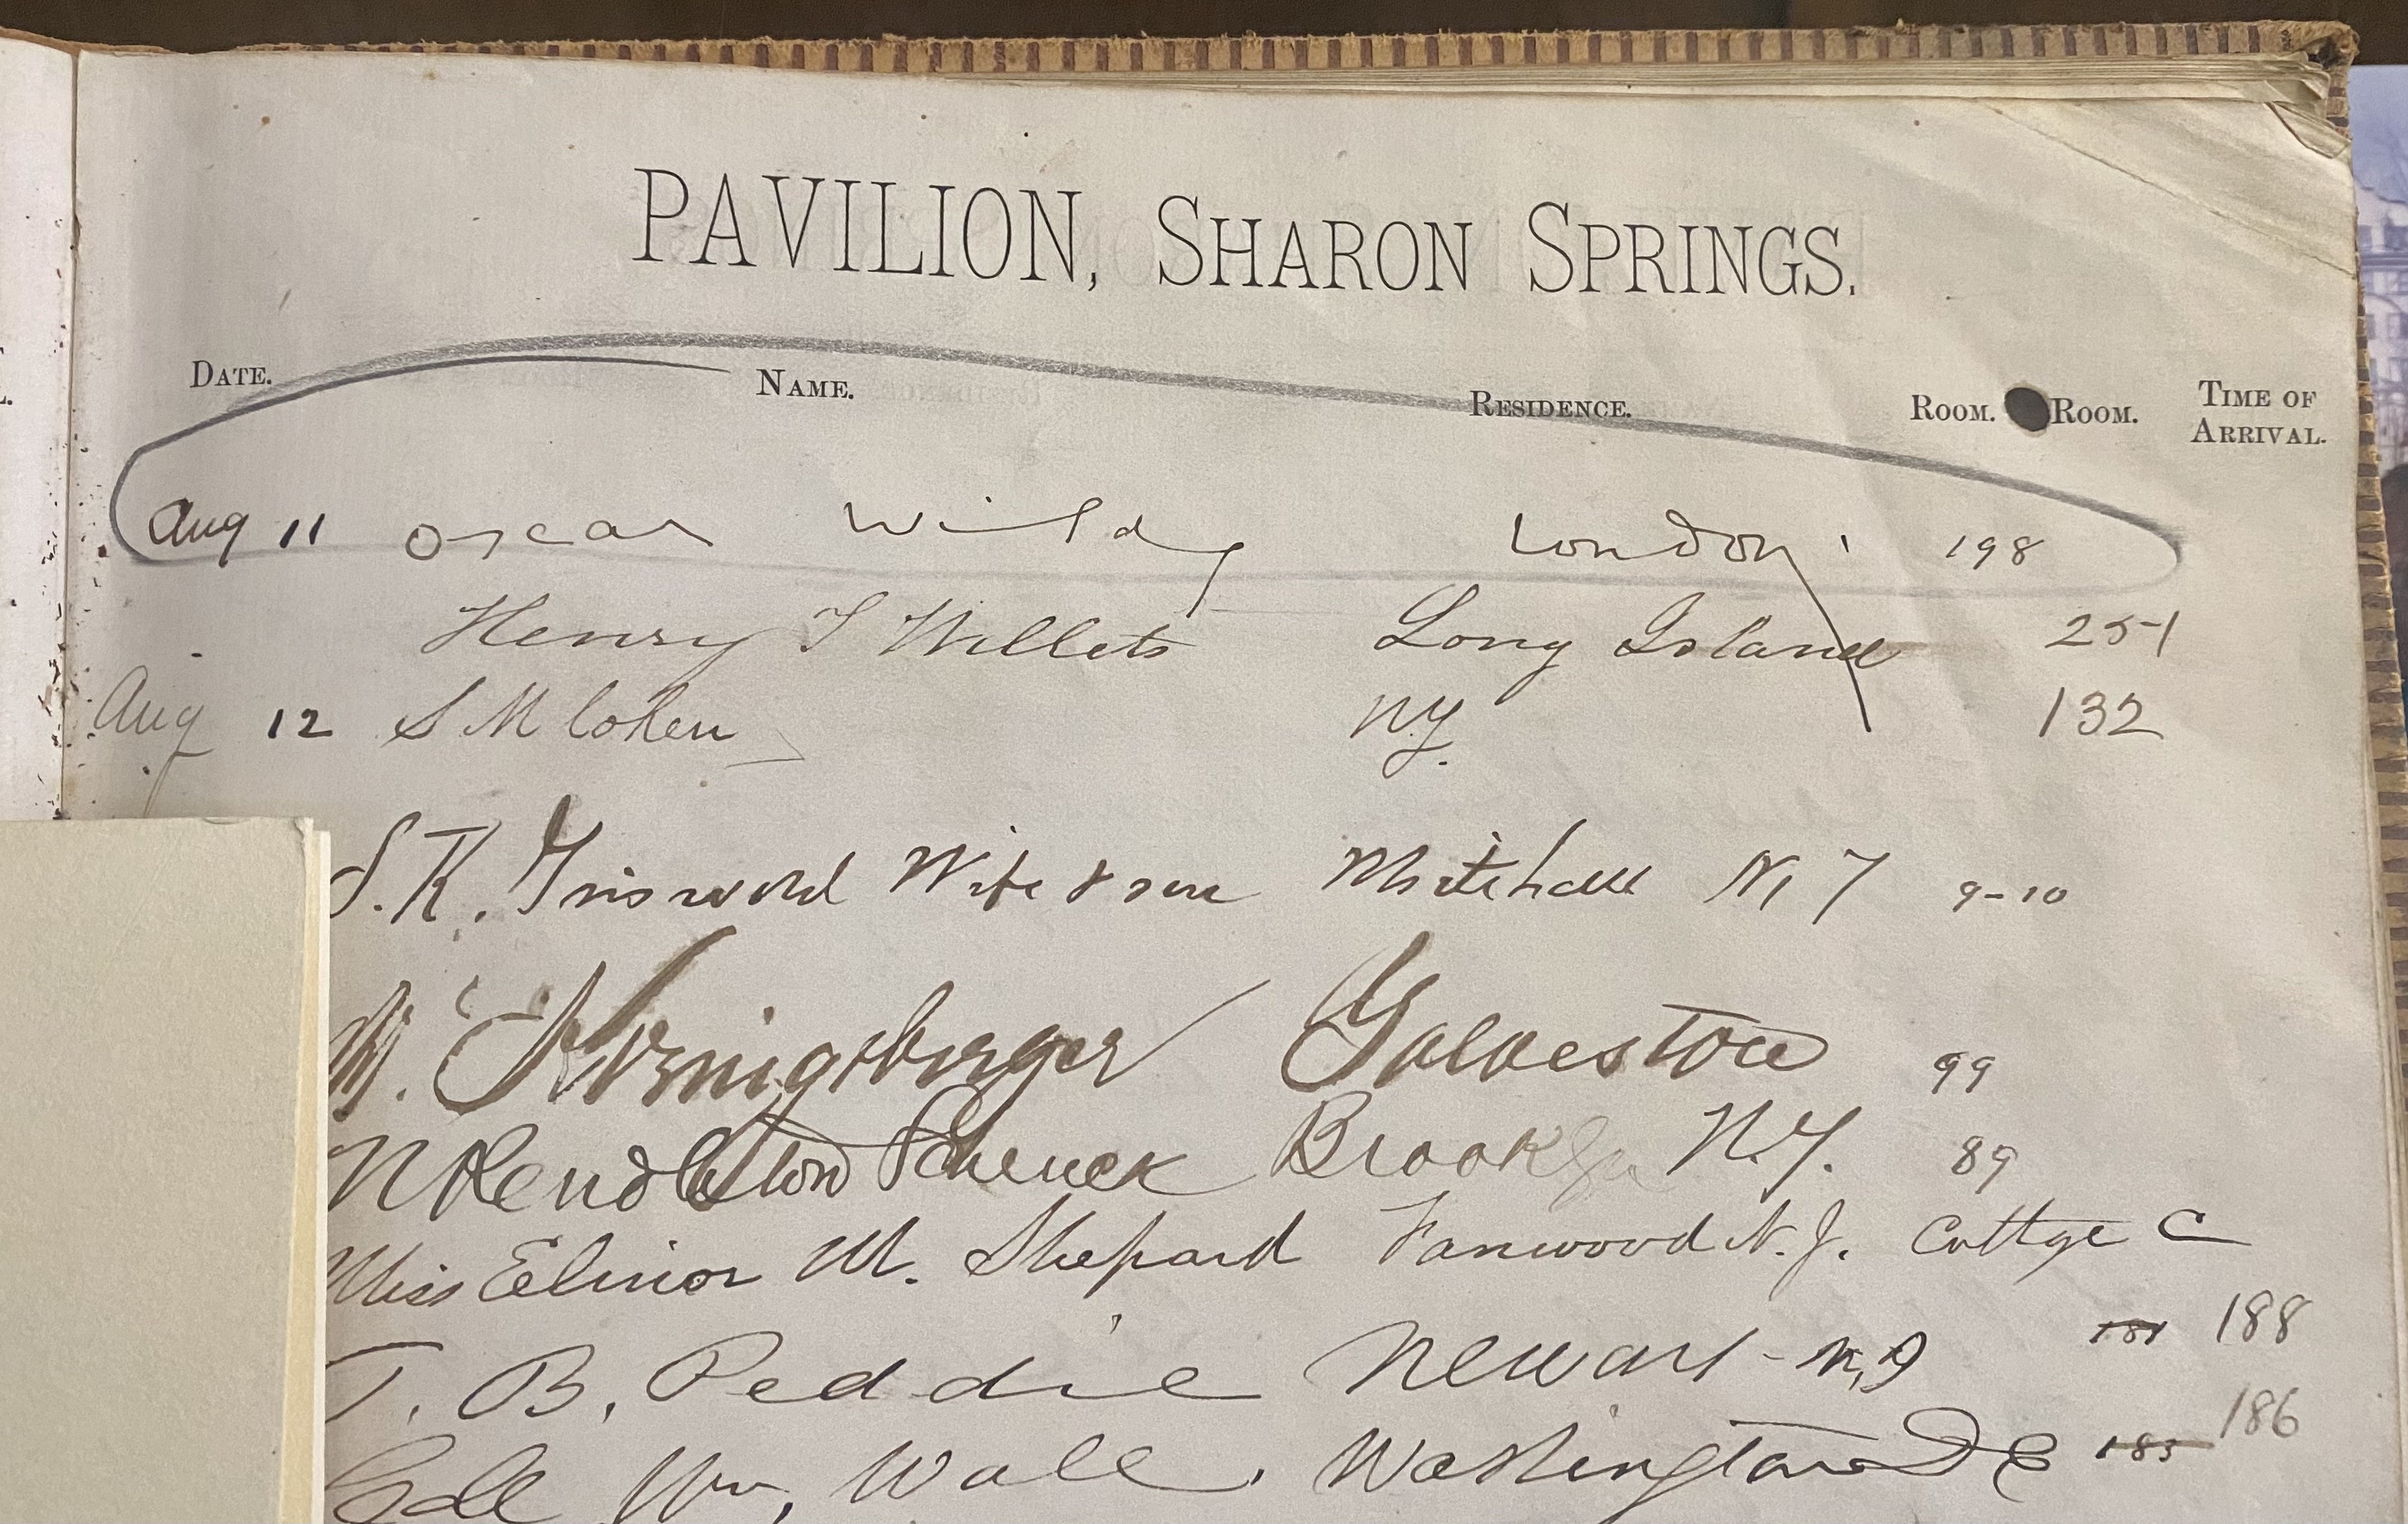 Pavilion Hotel Guest Book 1882. Oscar Wilde signature.